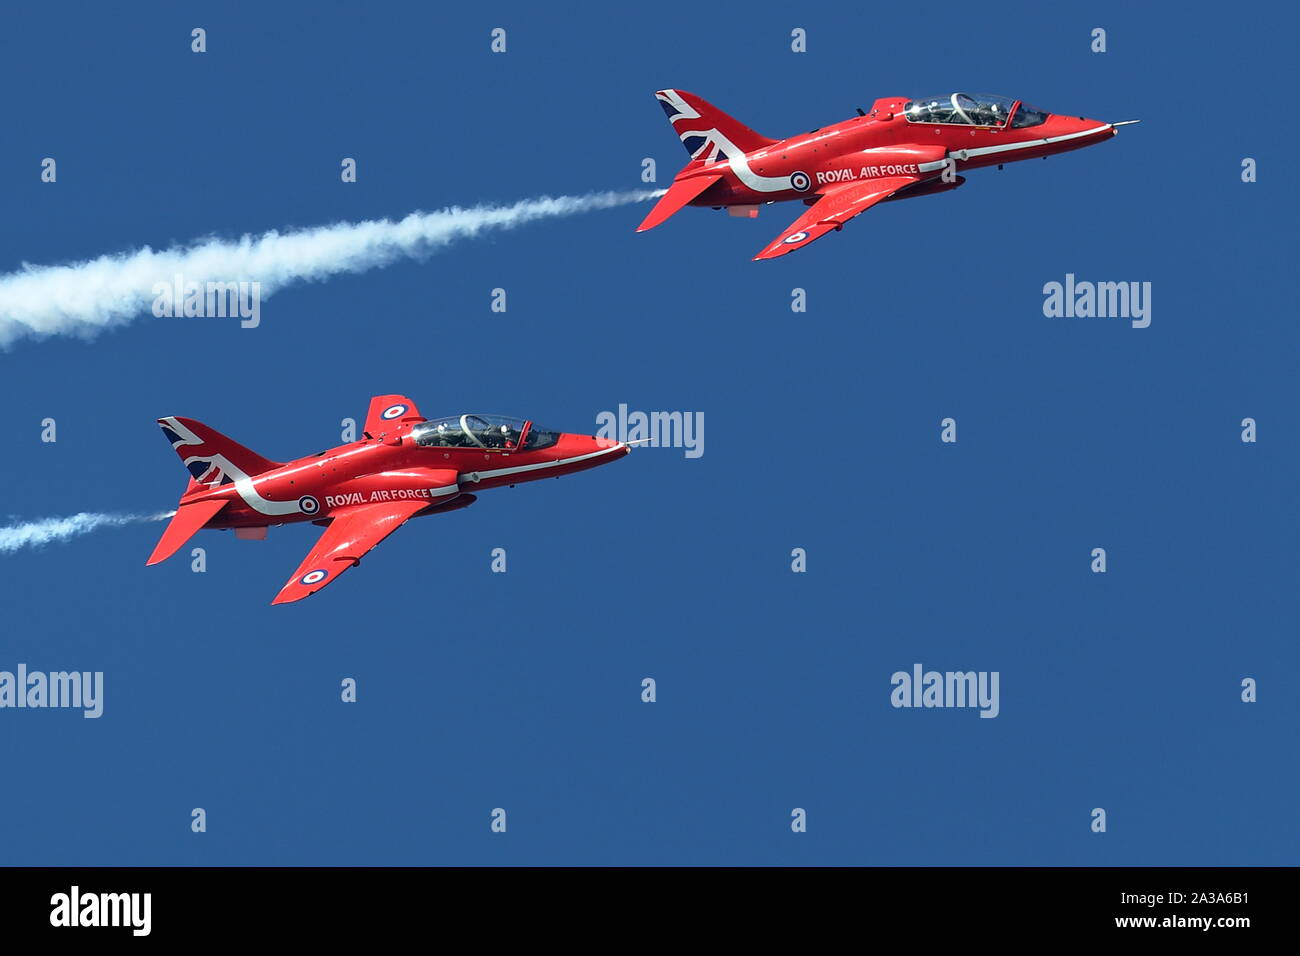 Die Royal Air Force Aerobatic Team, die roten Pfeile auf der großen pazifischen Airshow in Huntington Beach, Kalifornien am 4. Oktober, 2019 Stockfoto